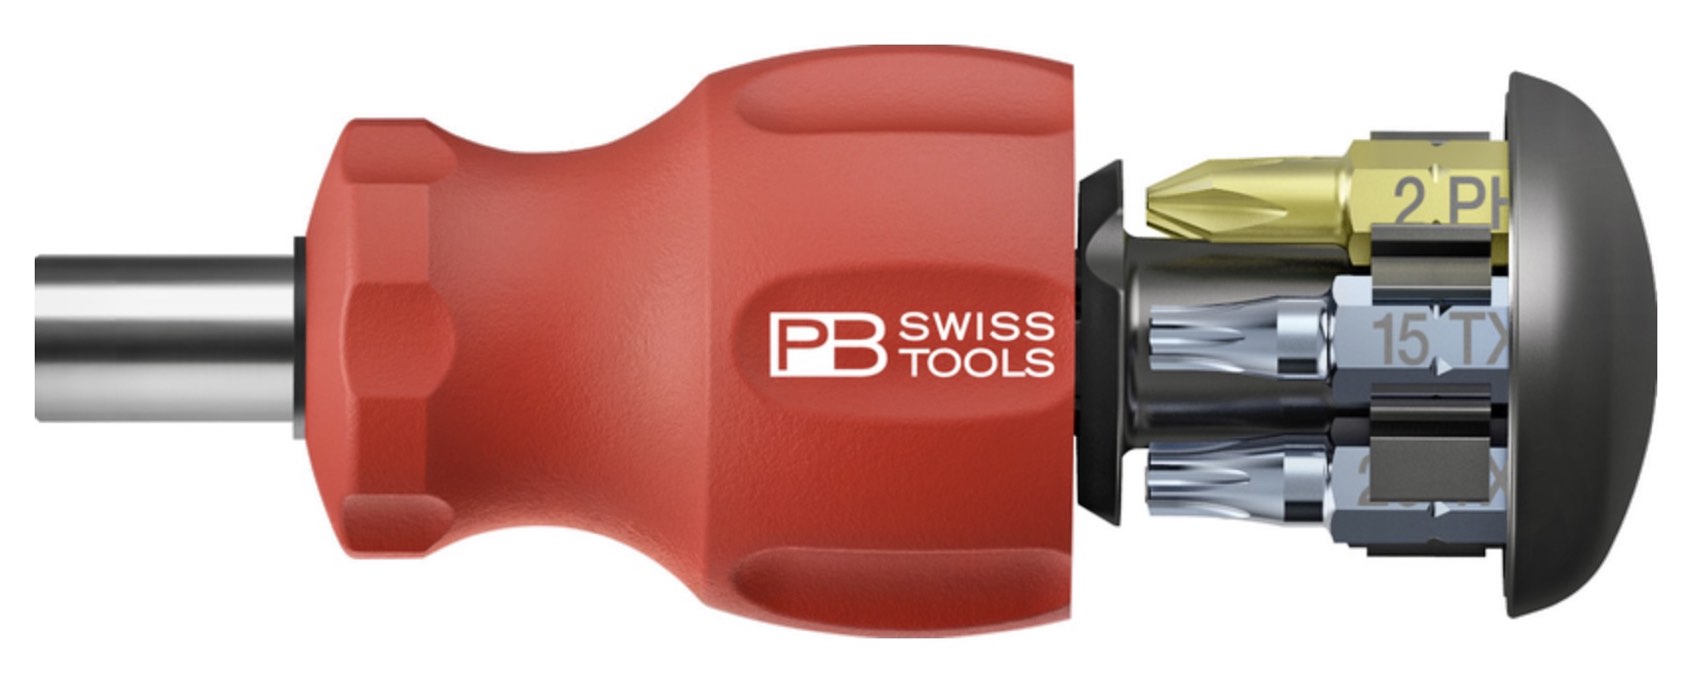 pb-swiss-tools-insider-stubby-multi-bit-pocket-screwdriver-2